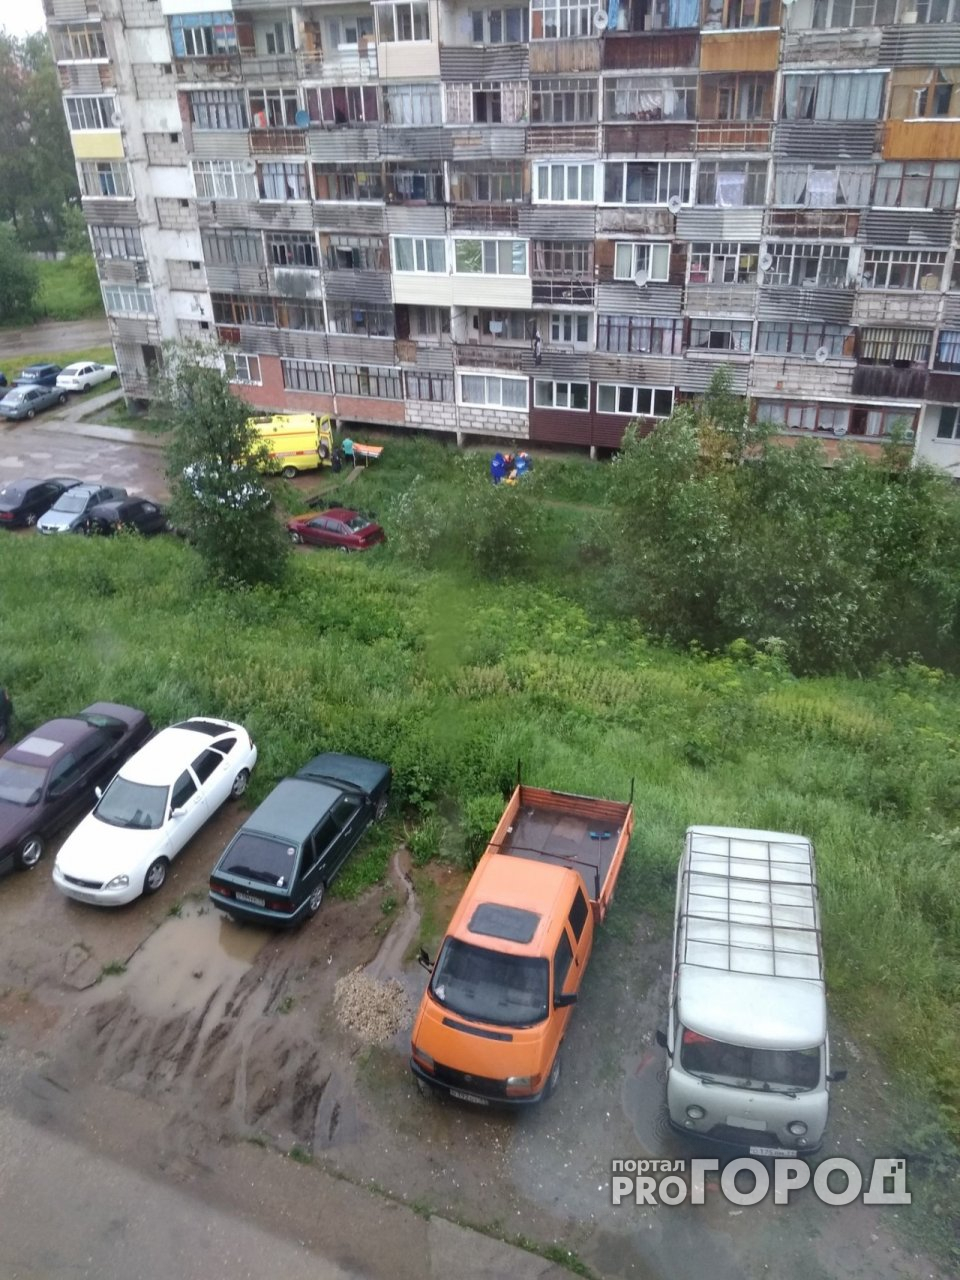 Появилось видео с места ЧП в Сыктывкаре, где женщина выпала из многоэтажки